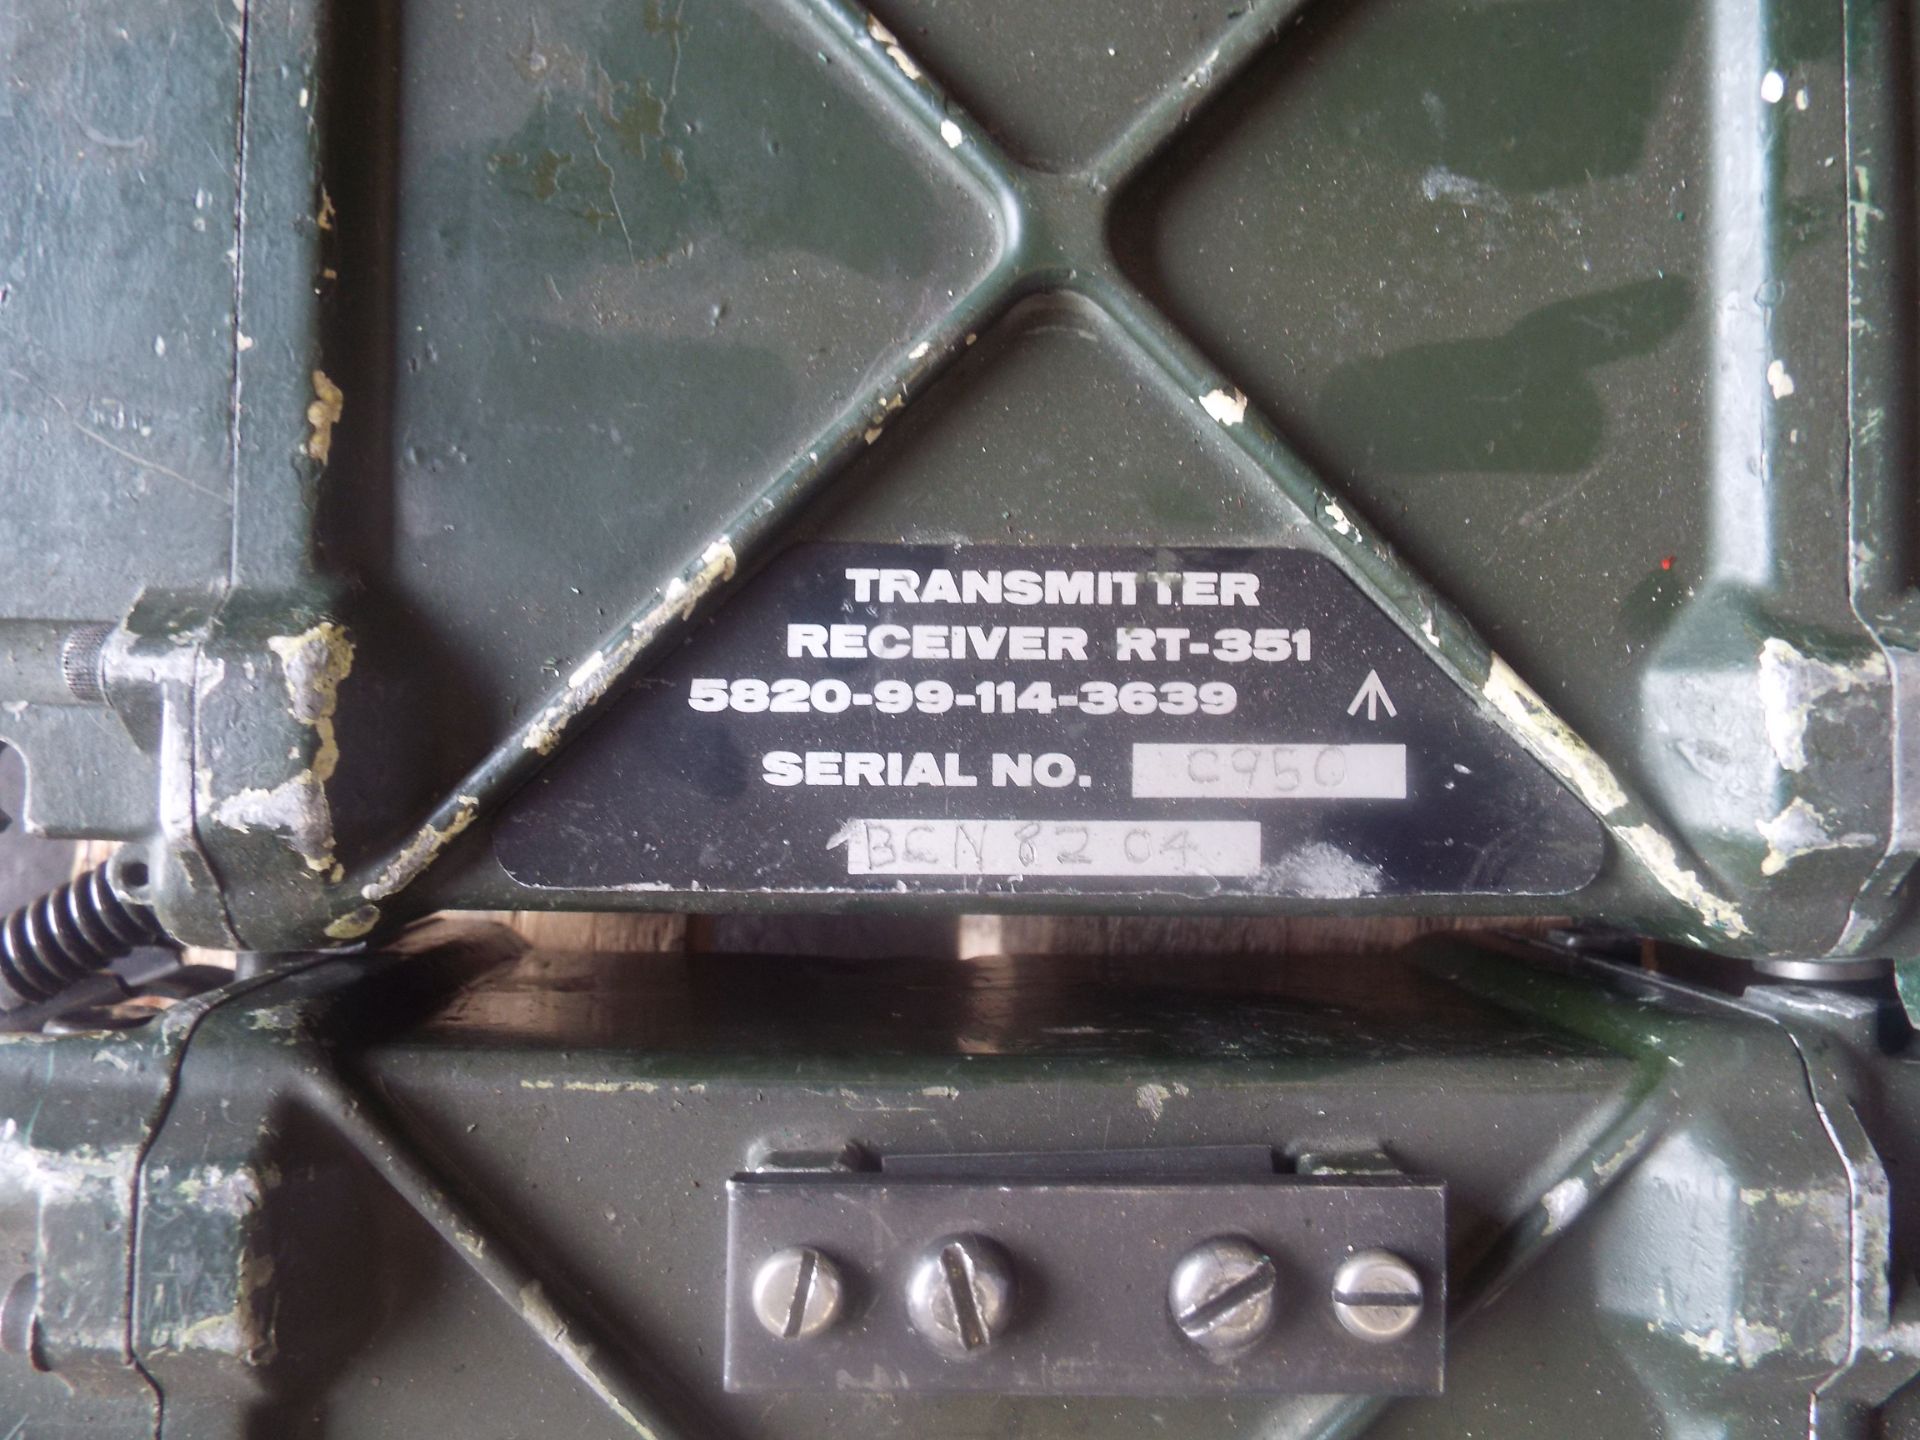 5 x Clansman RT- 351 Transmitter Receivers - Image 5 of 5